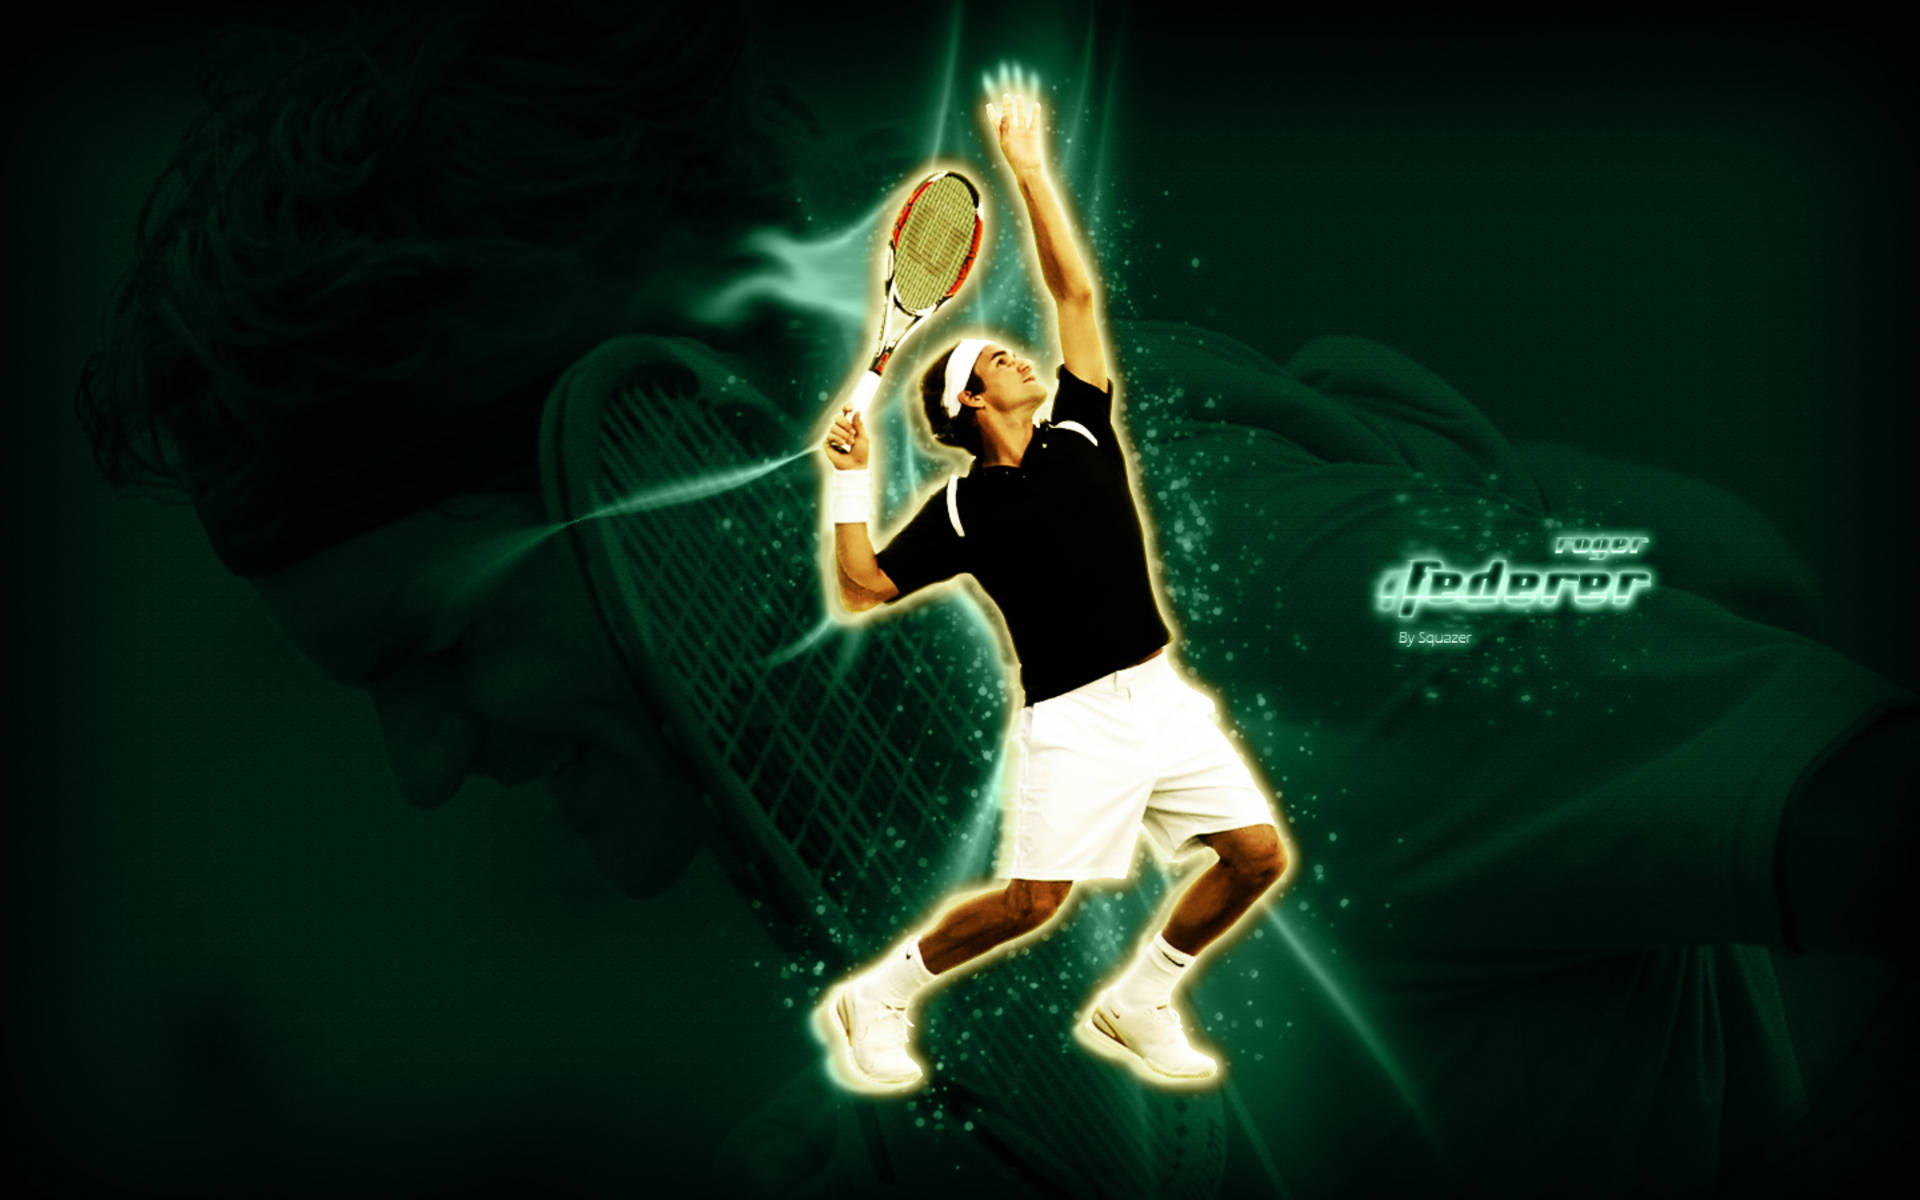 Roger Federer Tennis Poster Wallpaper